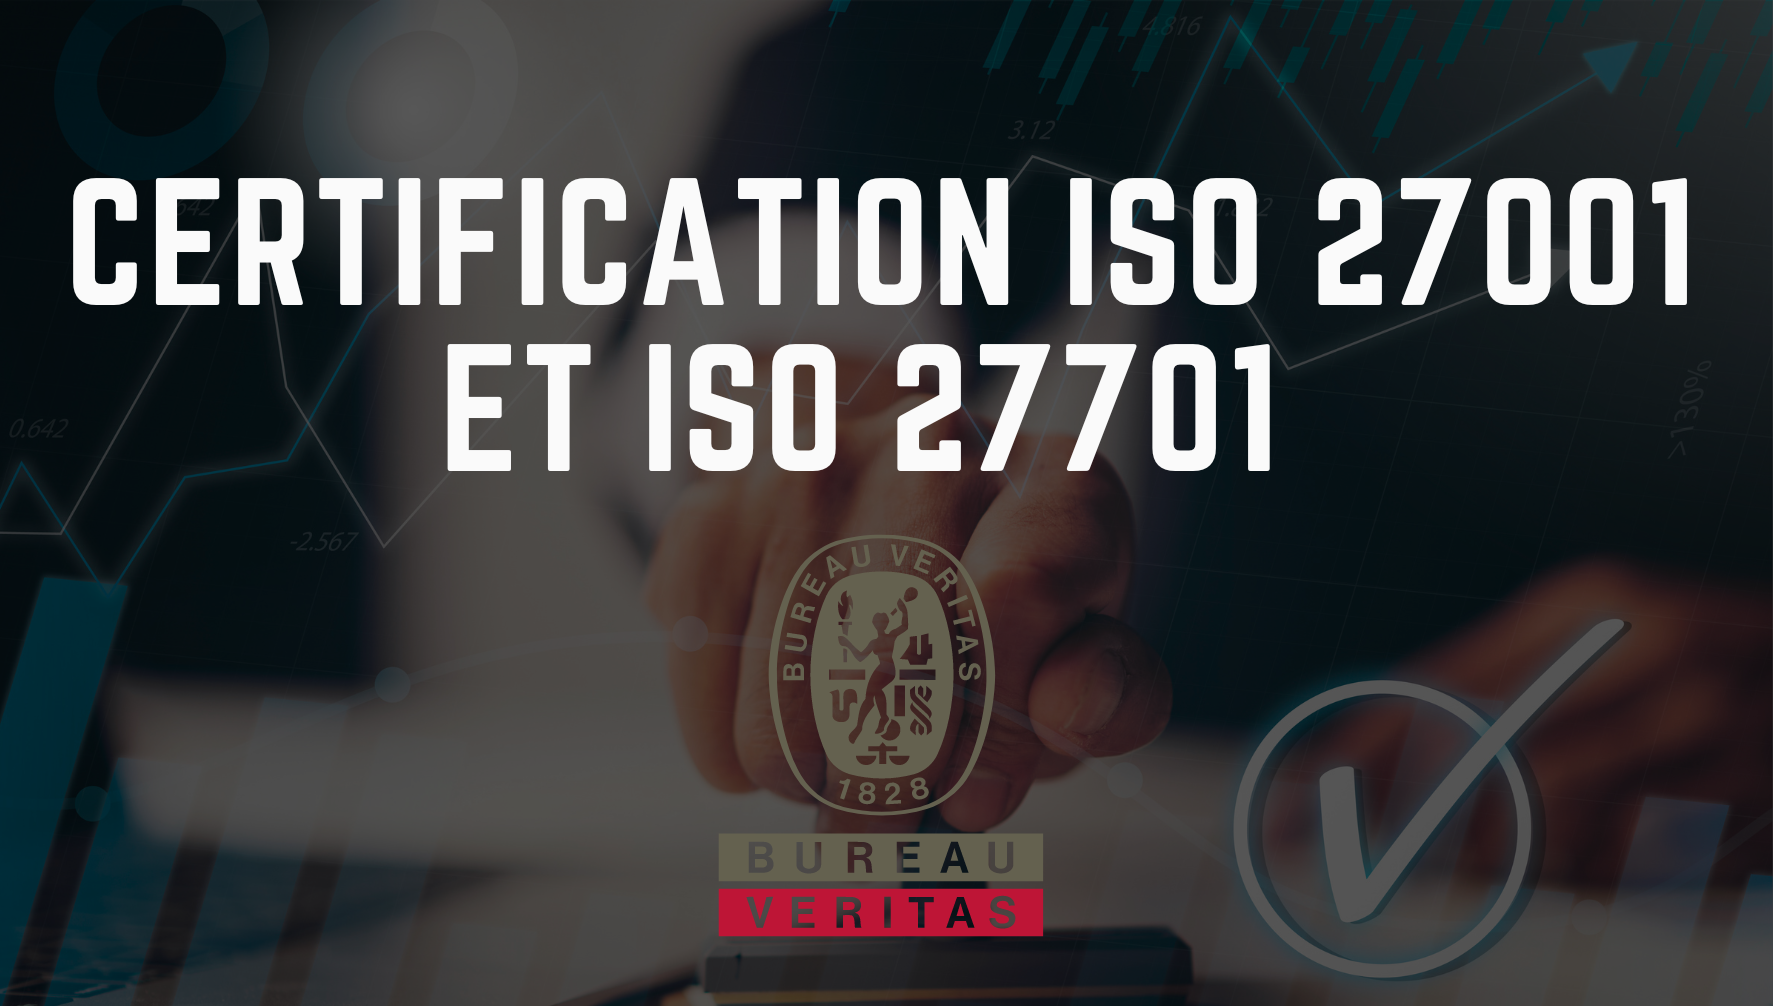 Renouvellement des certifications ISO 27001 et ISO 27701